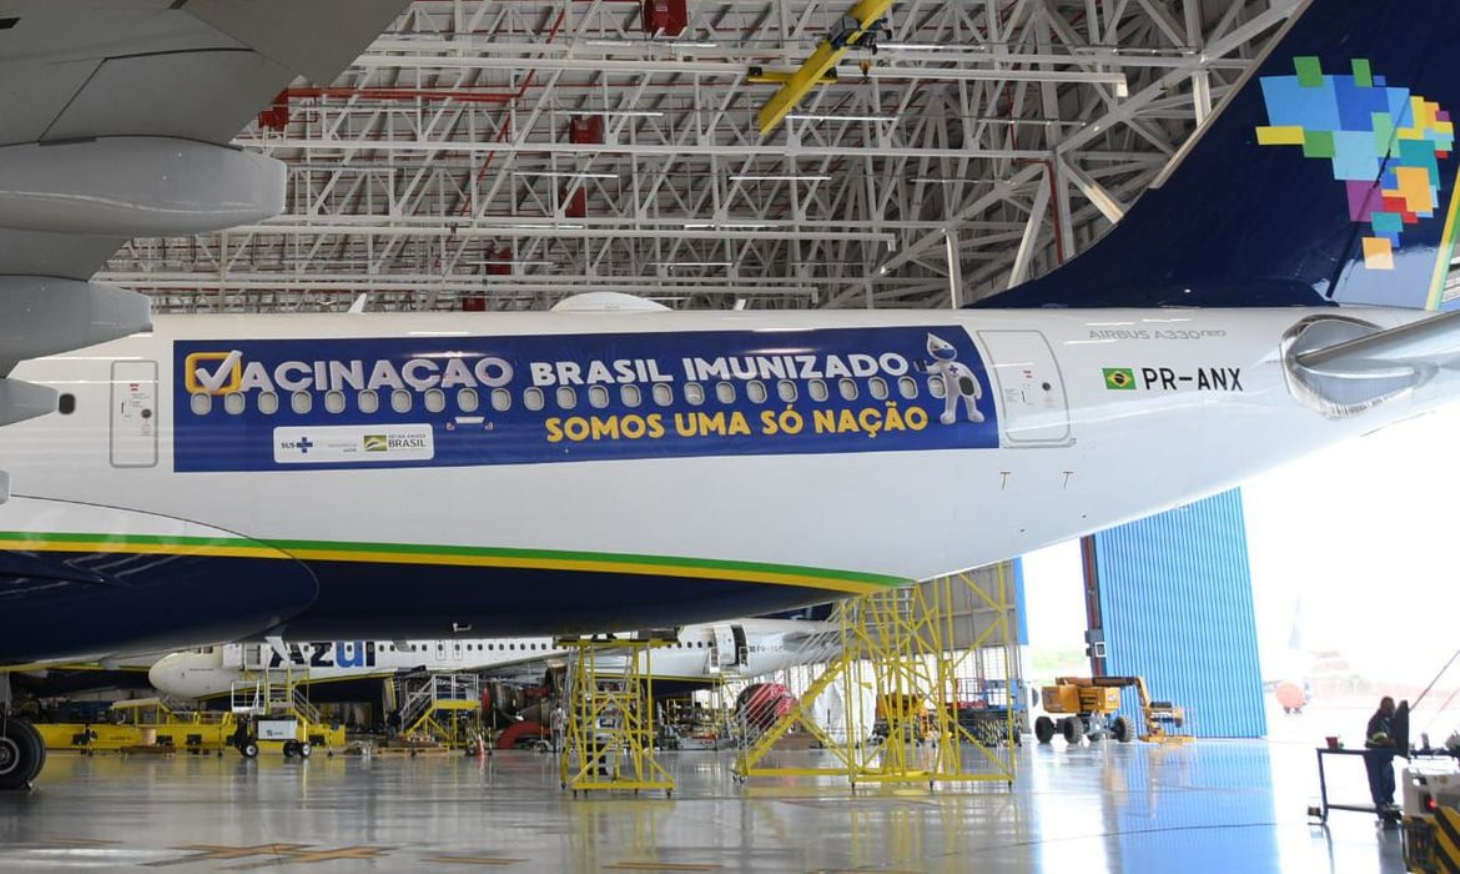 Avião que vai buscar vacinas na Índia decola hoje do Recife | Jornal da Orla